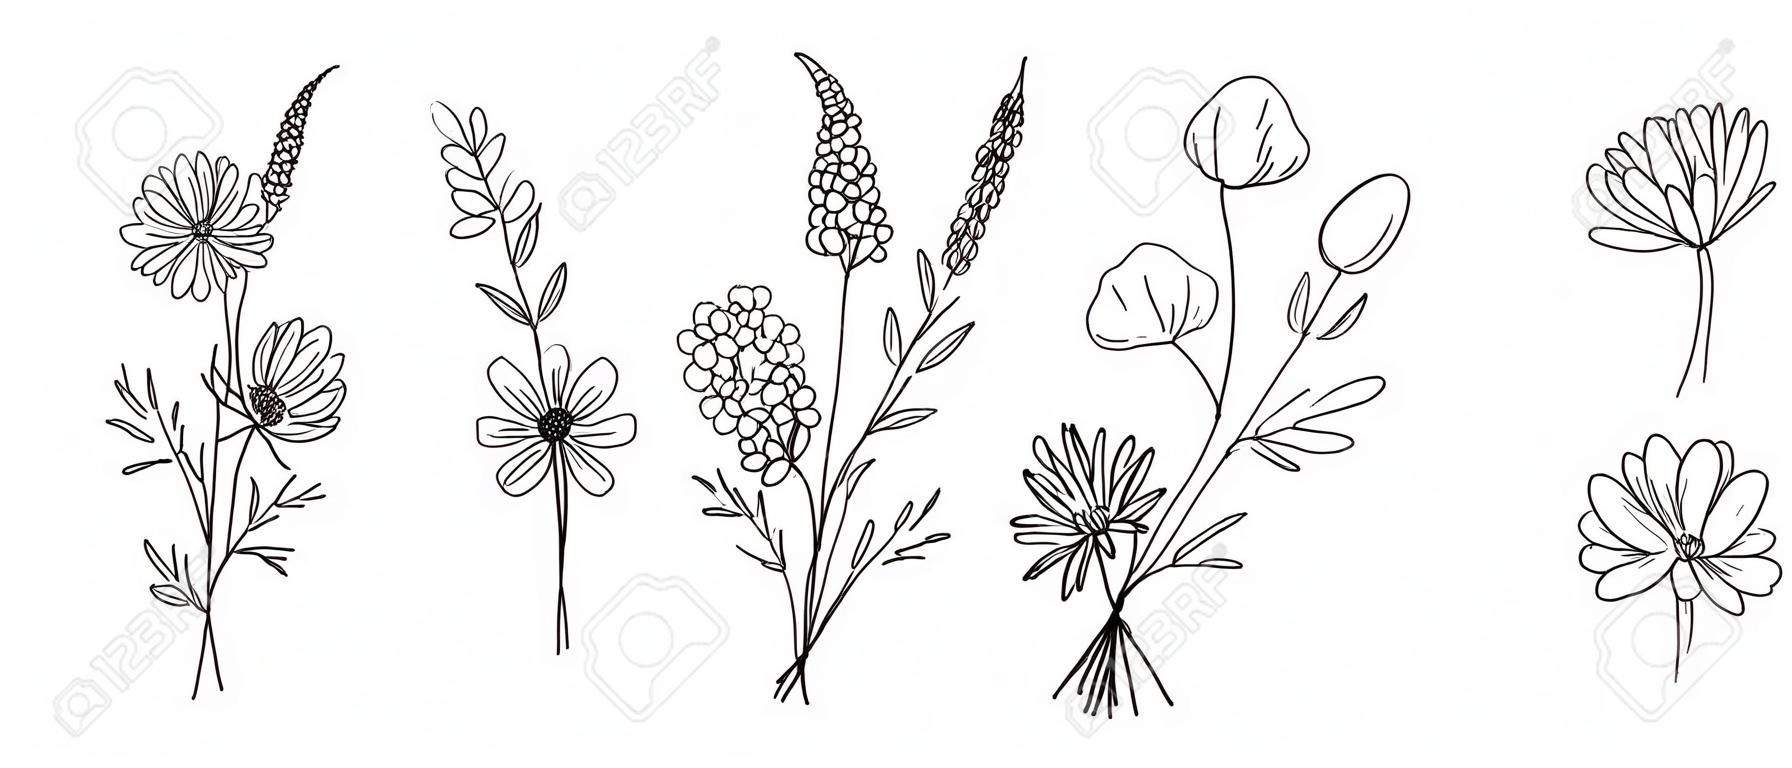 Ensemble de bouquets d'art en ligne de fleurs sauvages. Fleurs de prairie, herbes, plantes sauvages, éléments botaniques dessinés à la main pour des projets de conception. Illustration vectorielle.